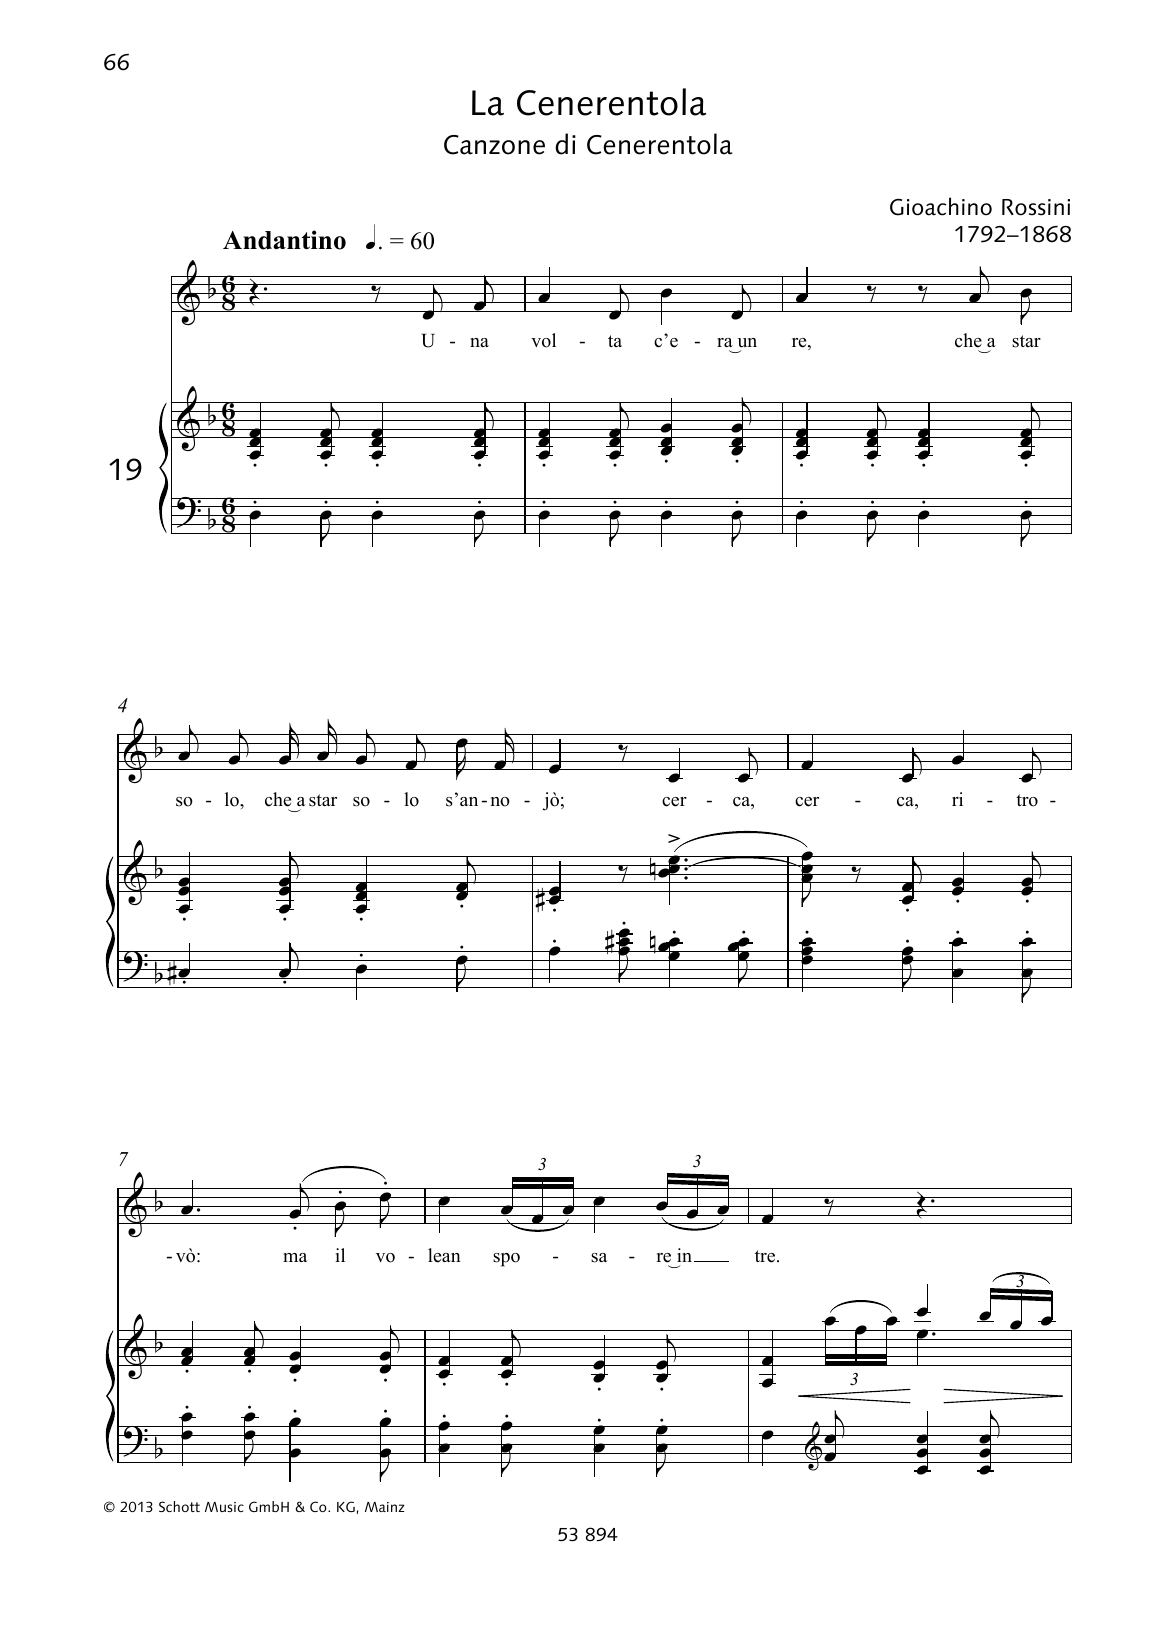 Gioacchino Rossini Una volta c'era unre Sheet Music Notes & Chords for Piano & Vocal - Download or Print PDF